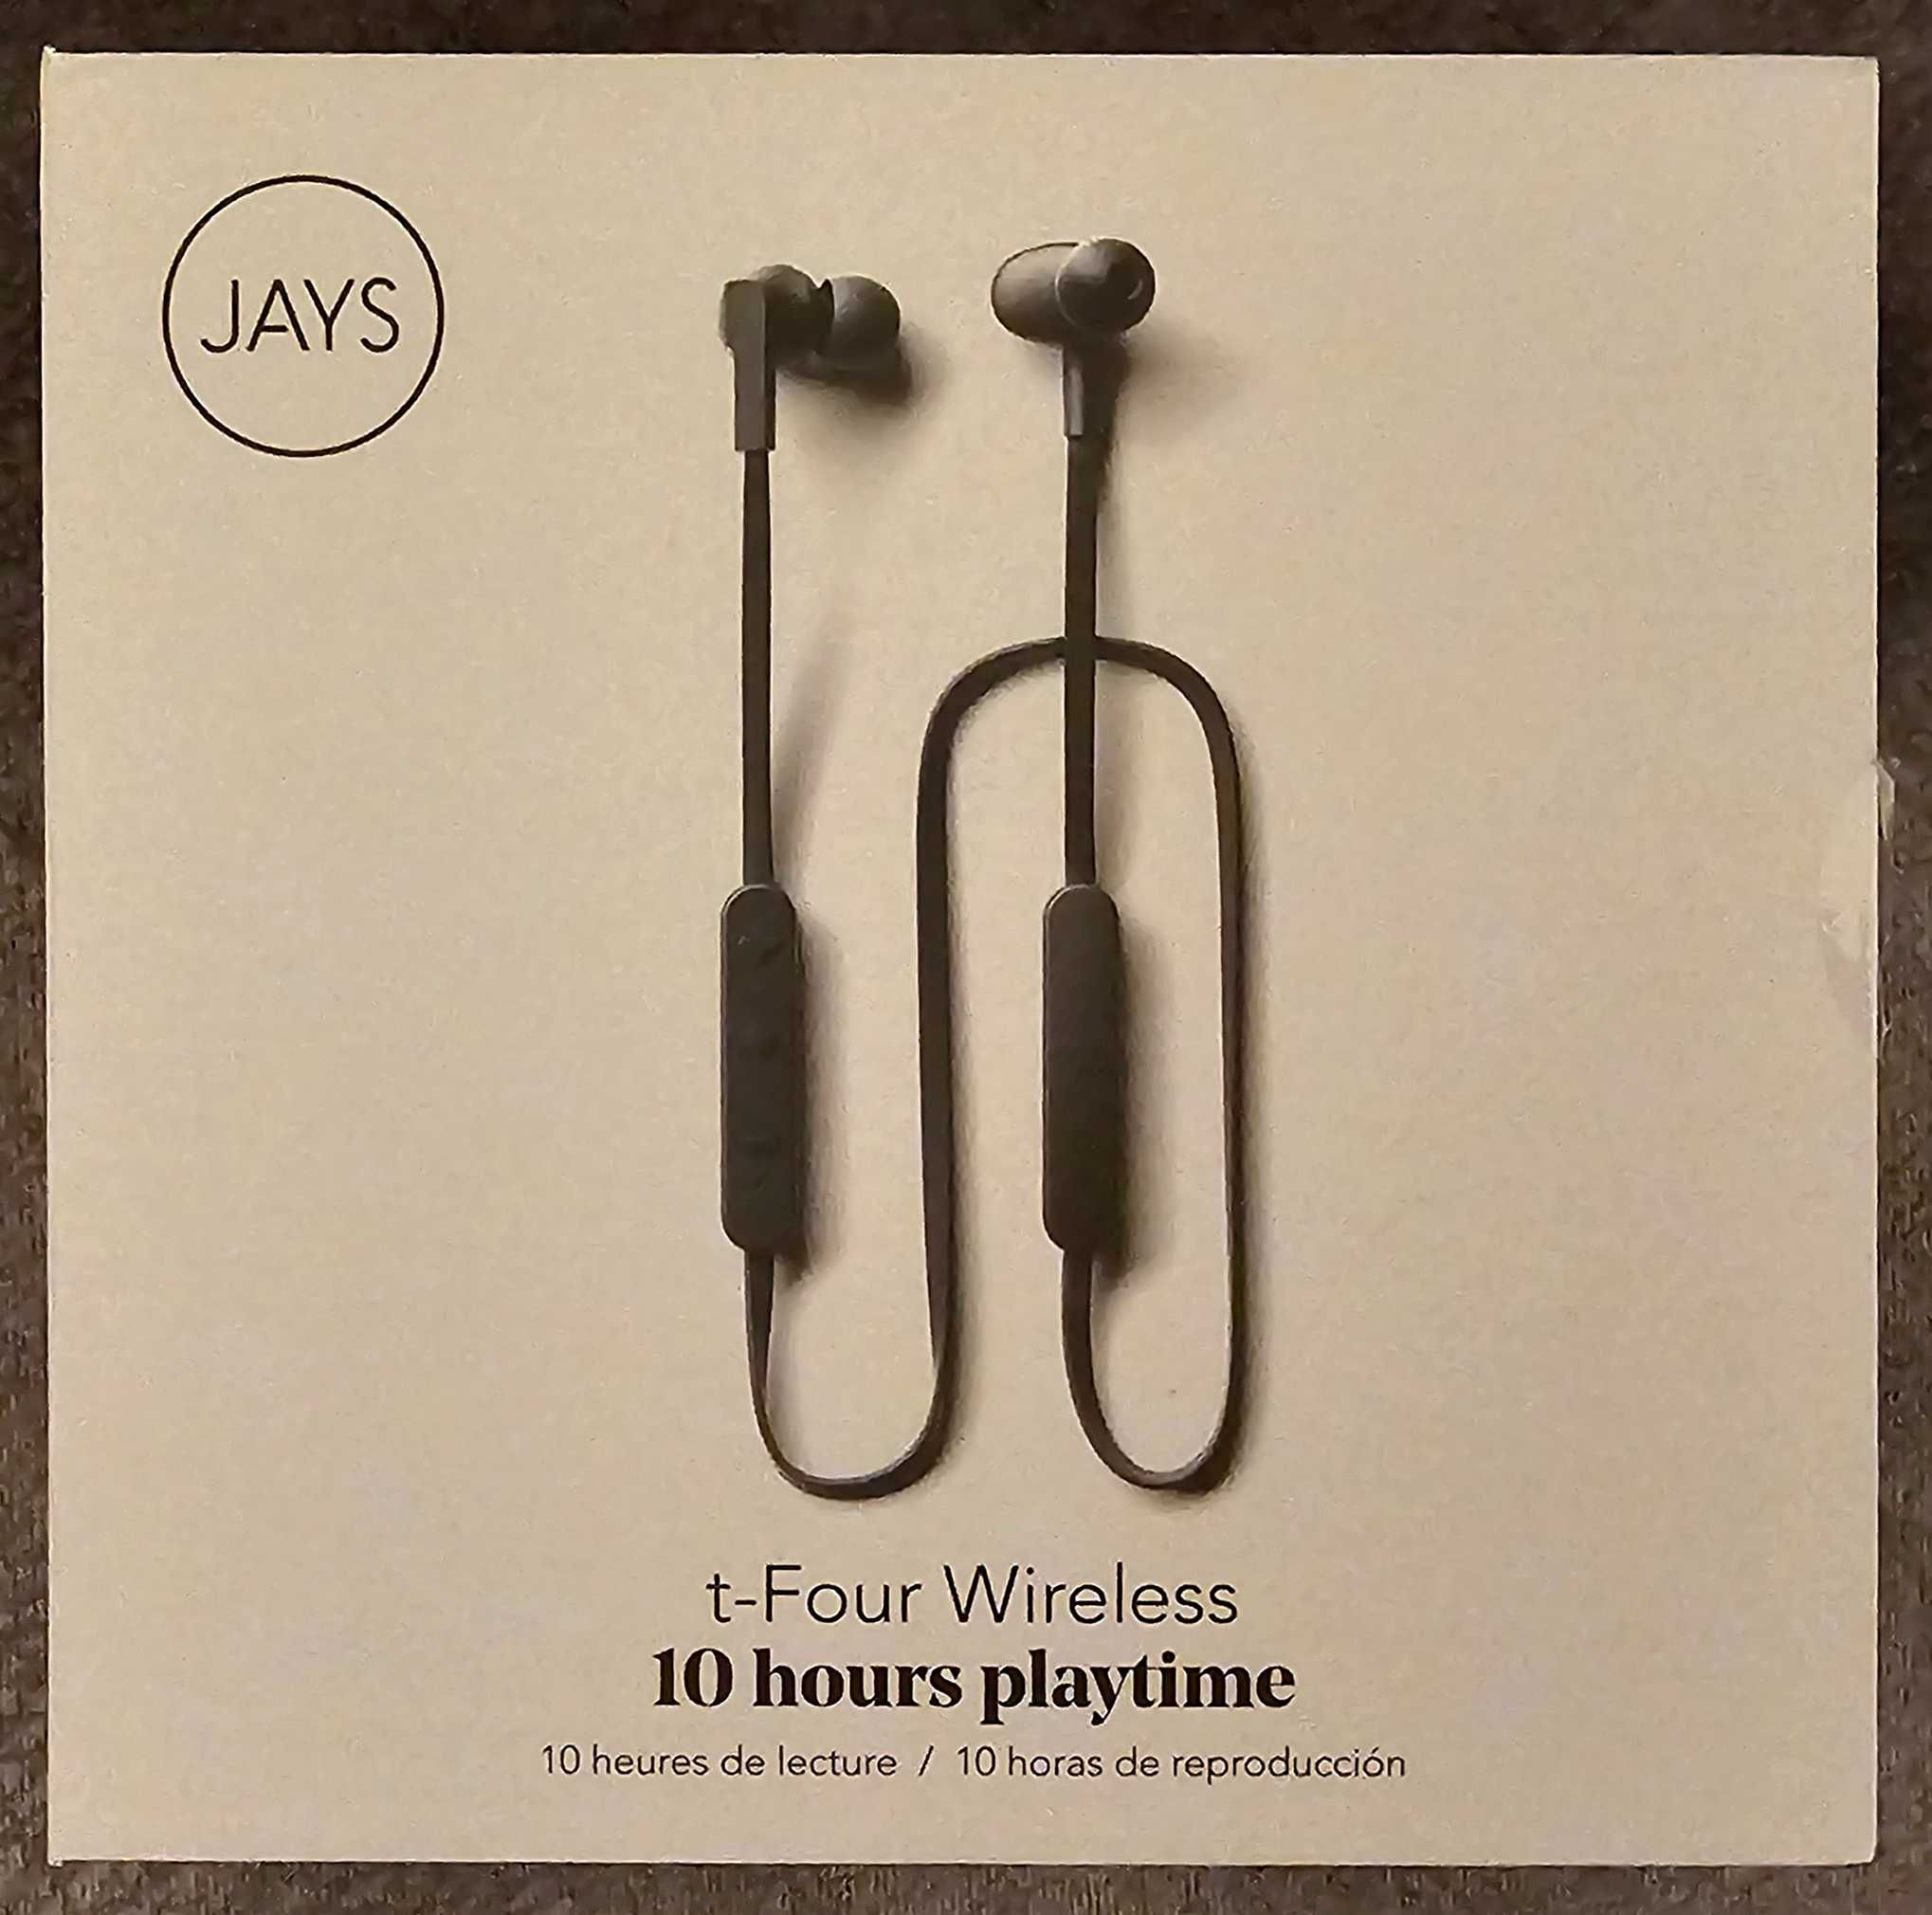 Słuchawki bezprzewodowe JAYS t-Four Wireless